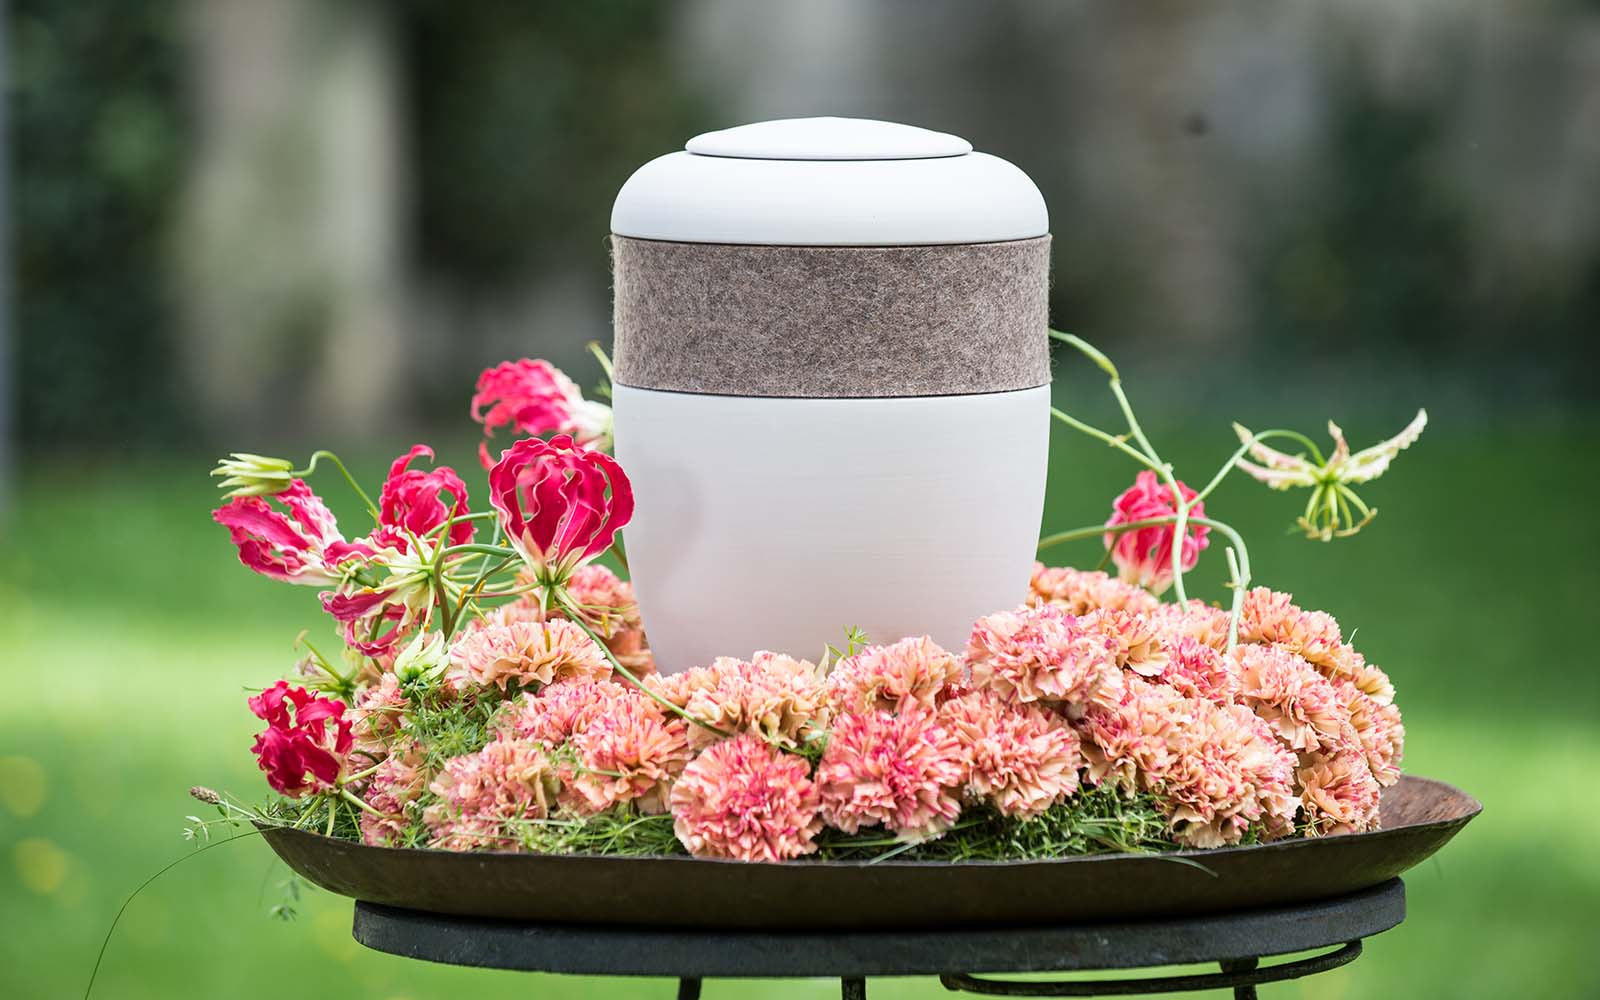 Cremeweiße Bio-Urne mit Kaschmir-Filzring, in Metallschale mit Blumenkranz, präsentiert schlichte Eleganz und Qualität